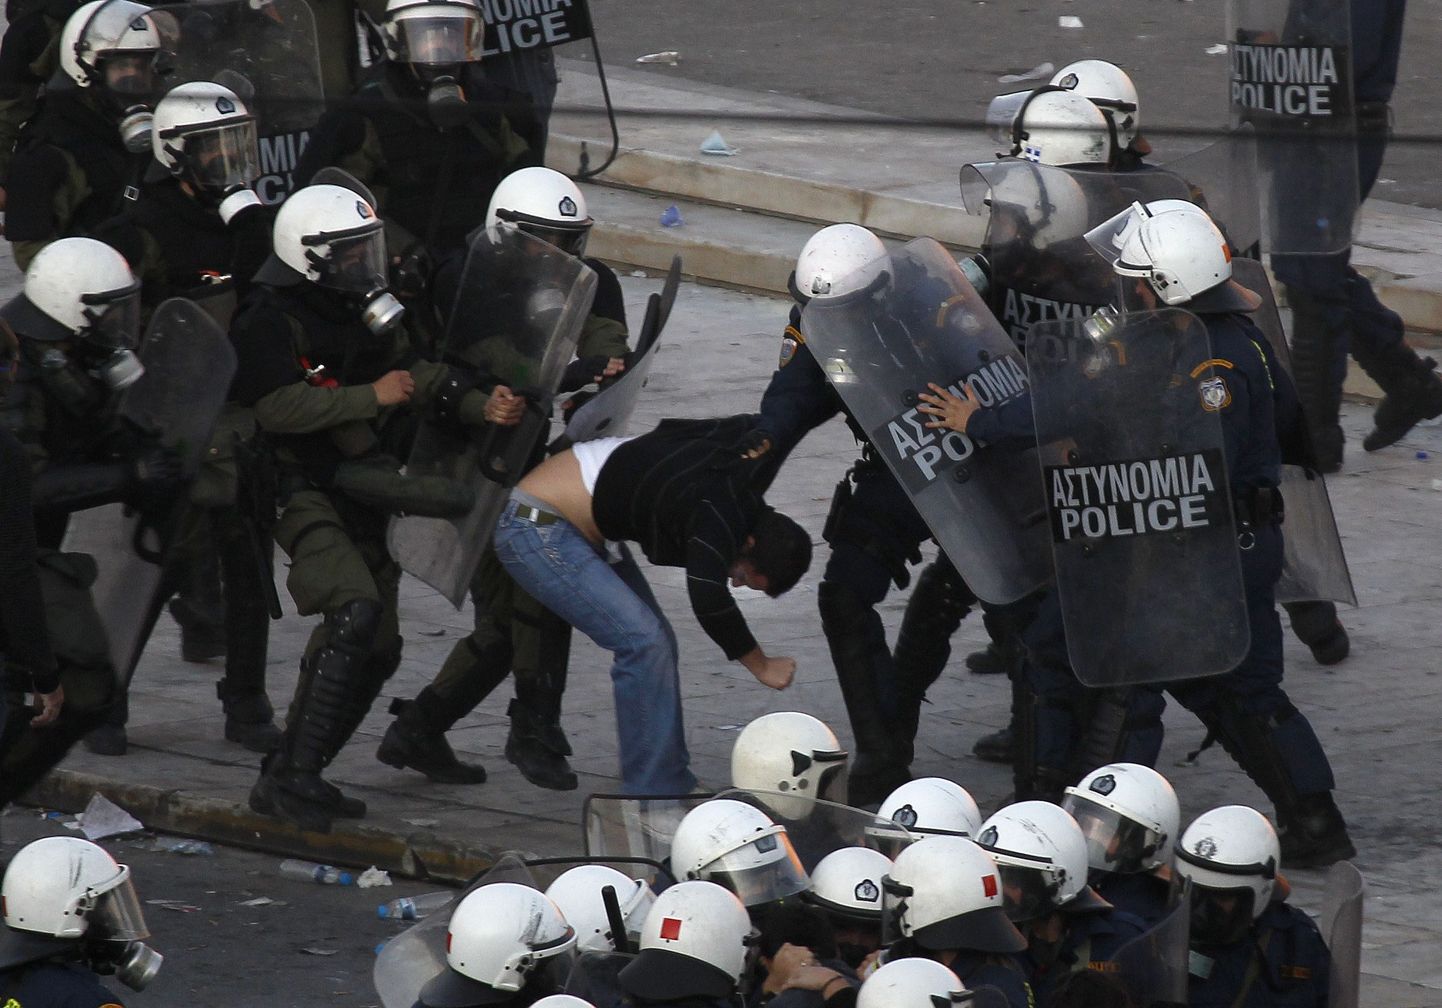 Kreeka ametiühingute kärpekavade vastane 48-tunnine streik. Meeleavaldused muutusid vägivaldseteks ja vandaalitsevateks.